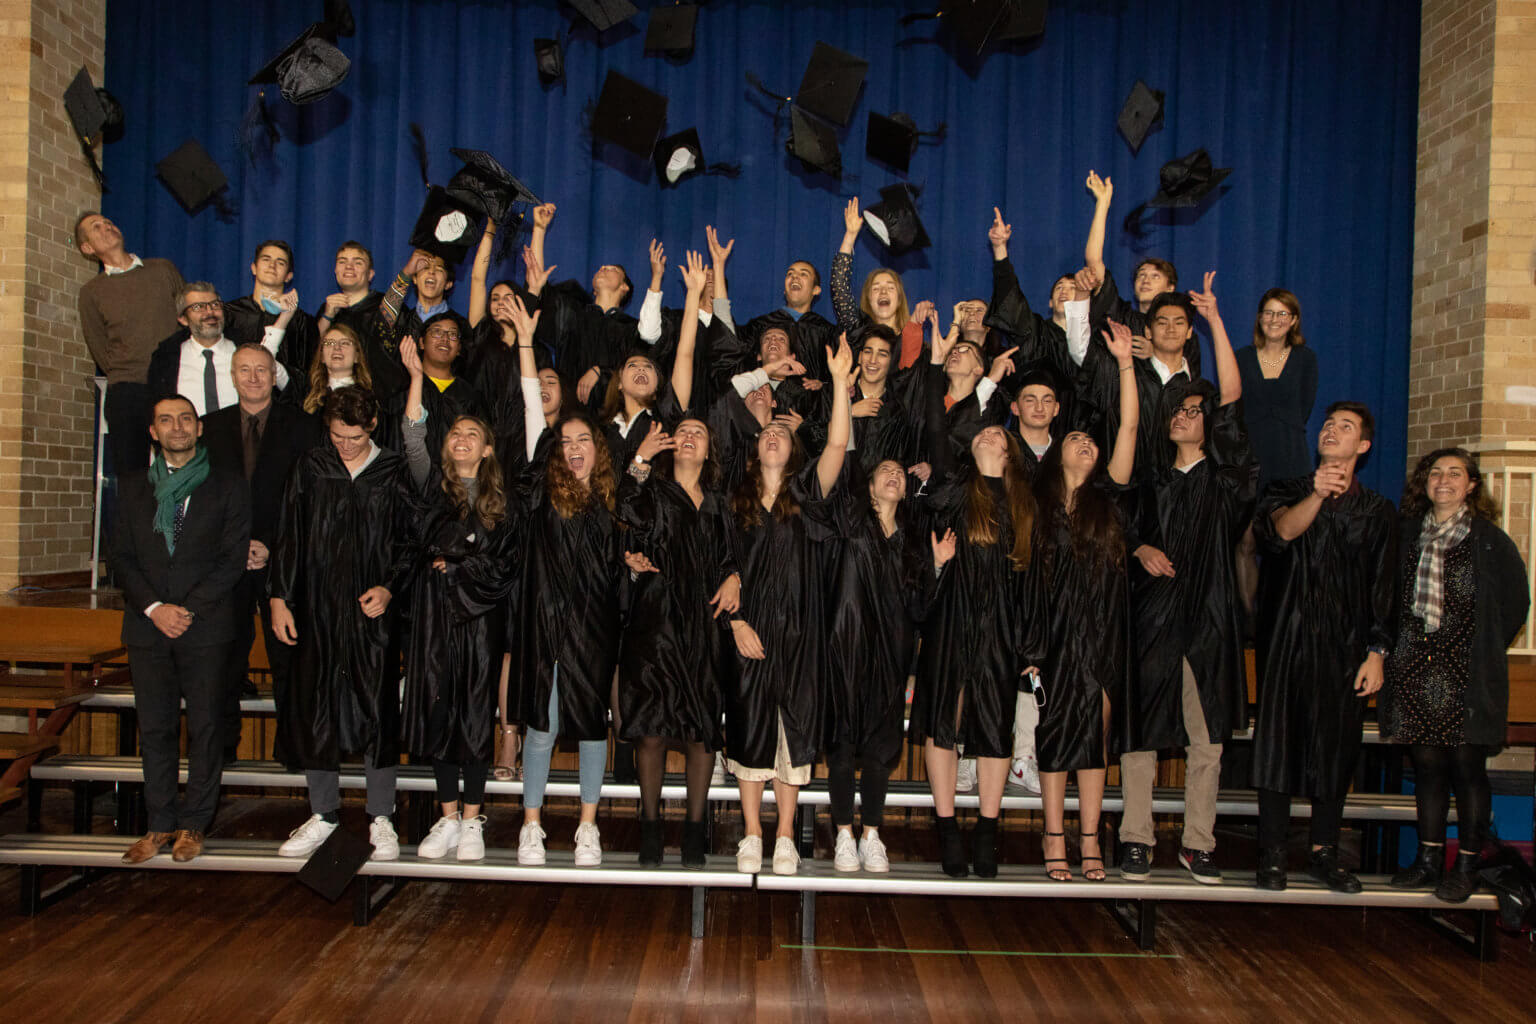 Lycée Condorcet graduation ceremony